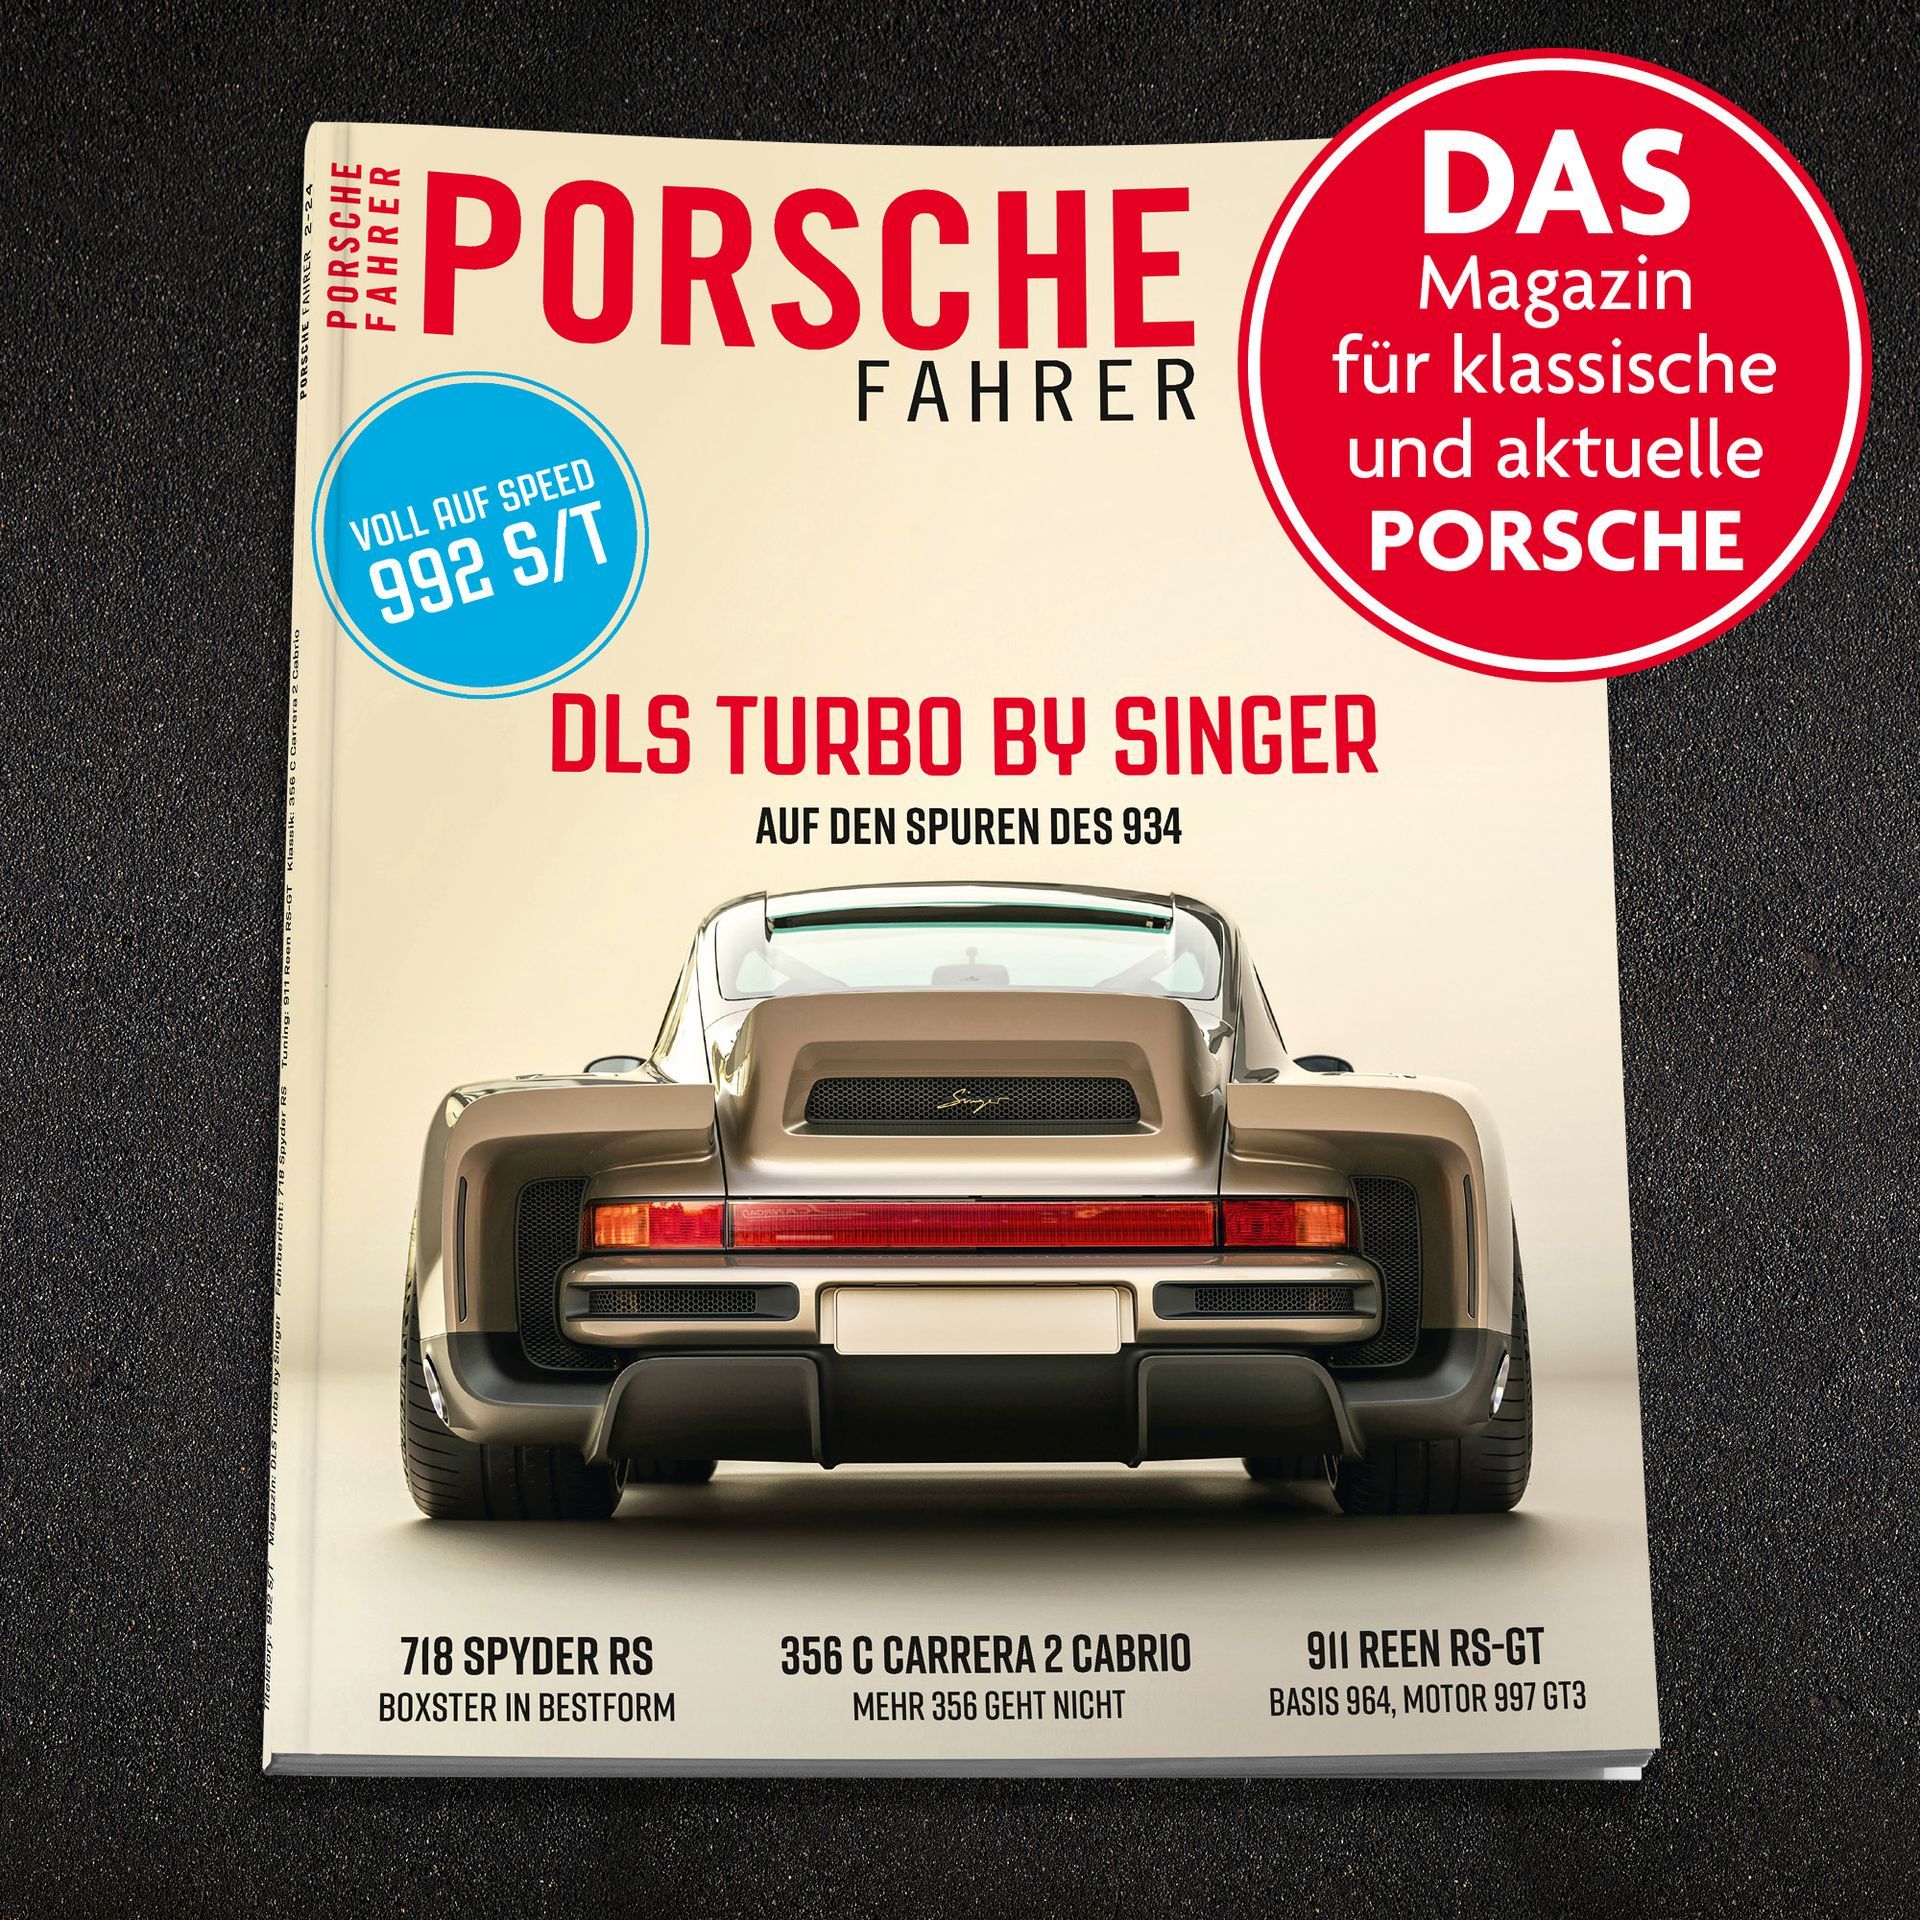 Porsche Fahrer Magazin